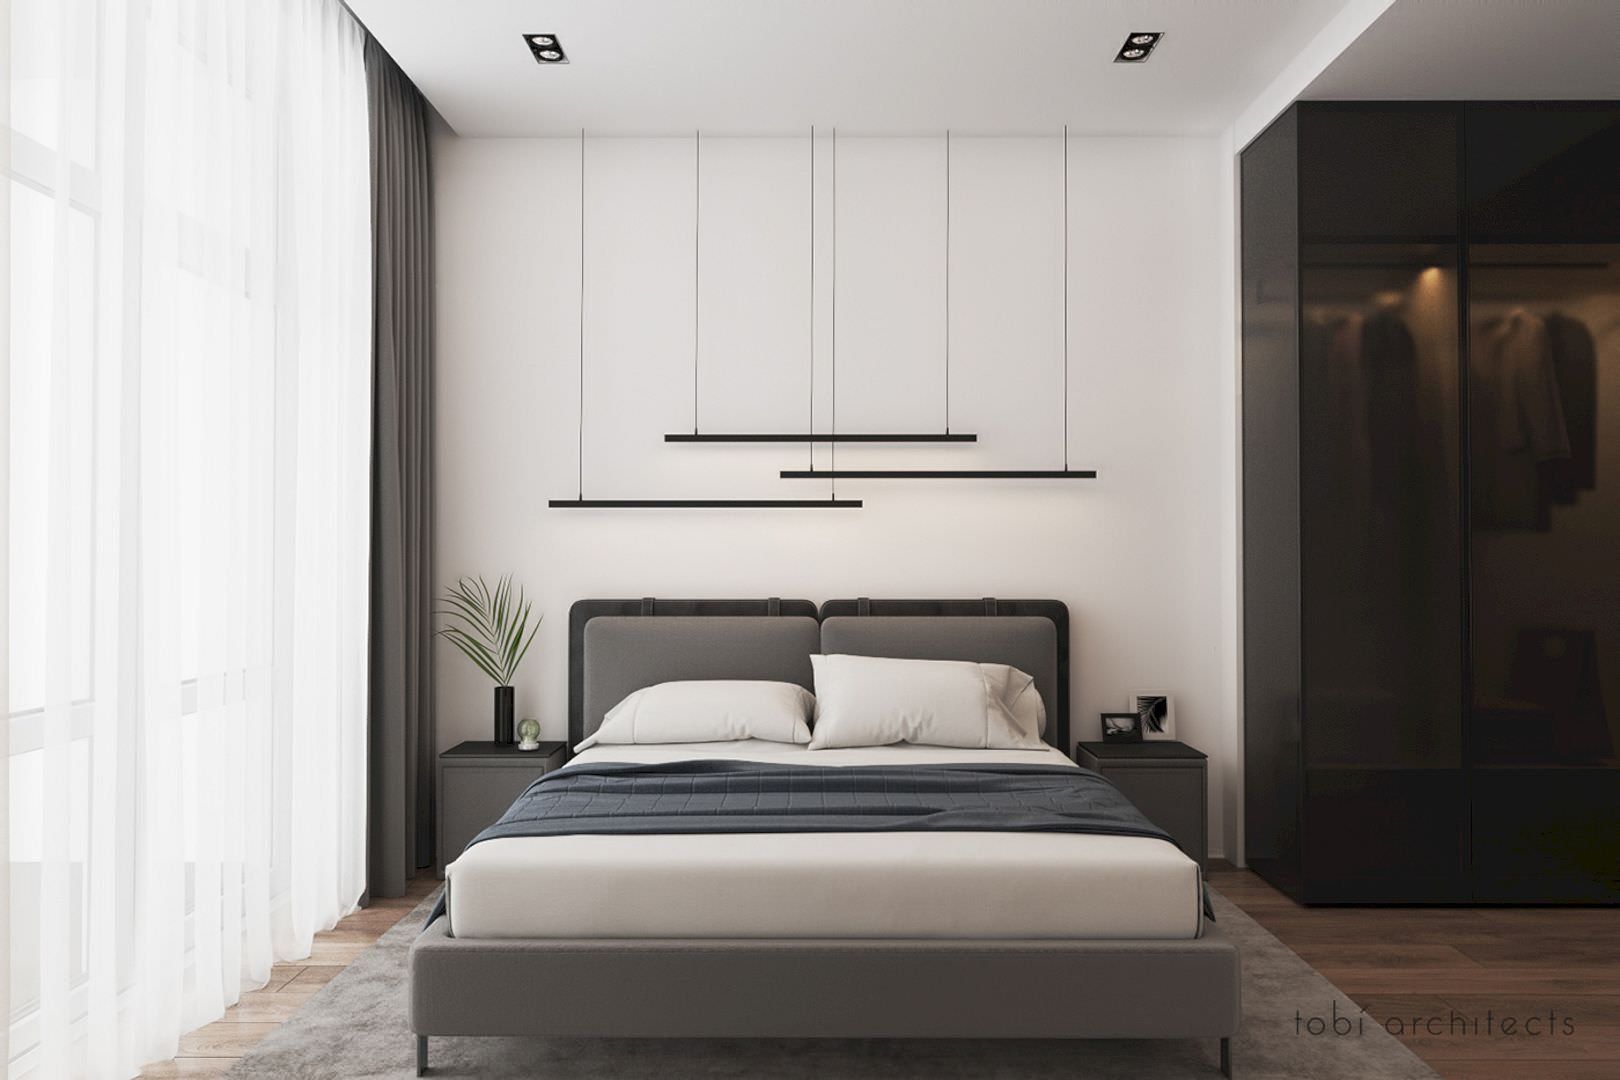 دکوارسیون اتاق خواب مدرن و ساده با تخت پارچه ای خاکستری که از تعادل نامتقارن در رنگ های تیره و روشن در آن استفاده شده است